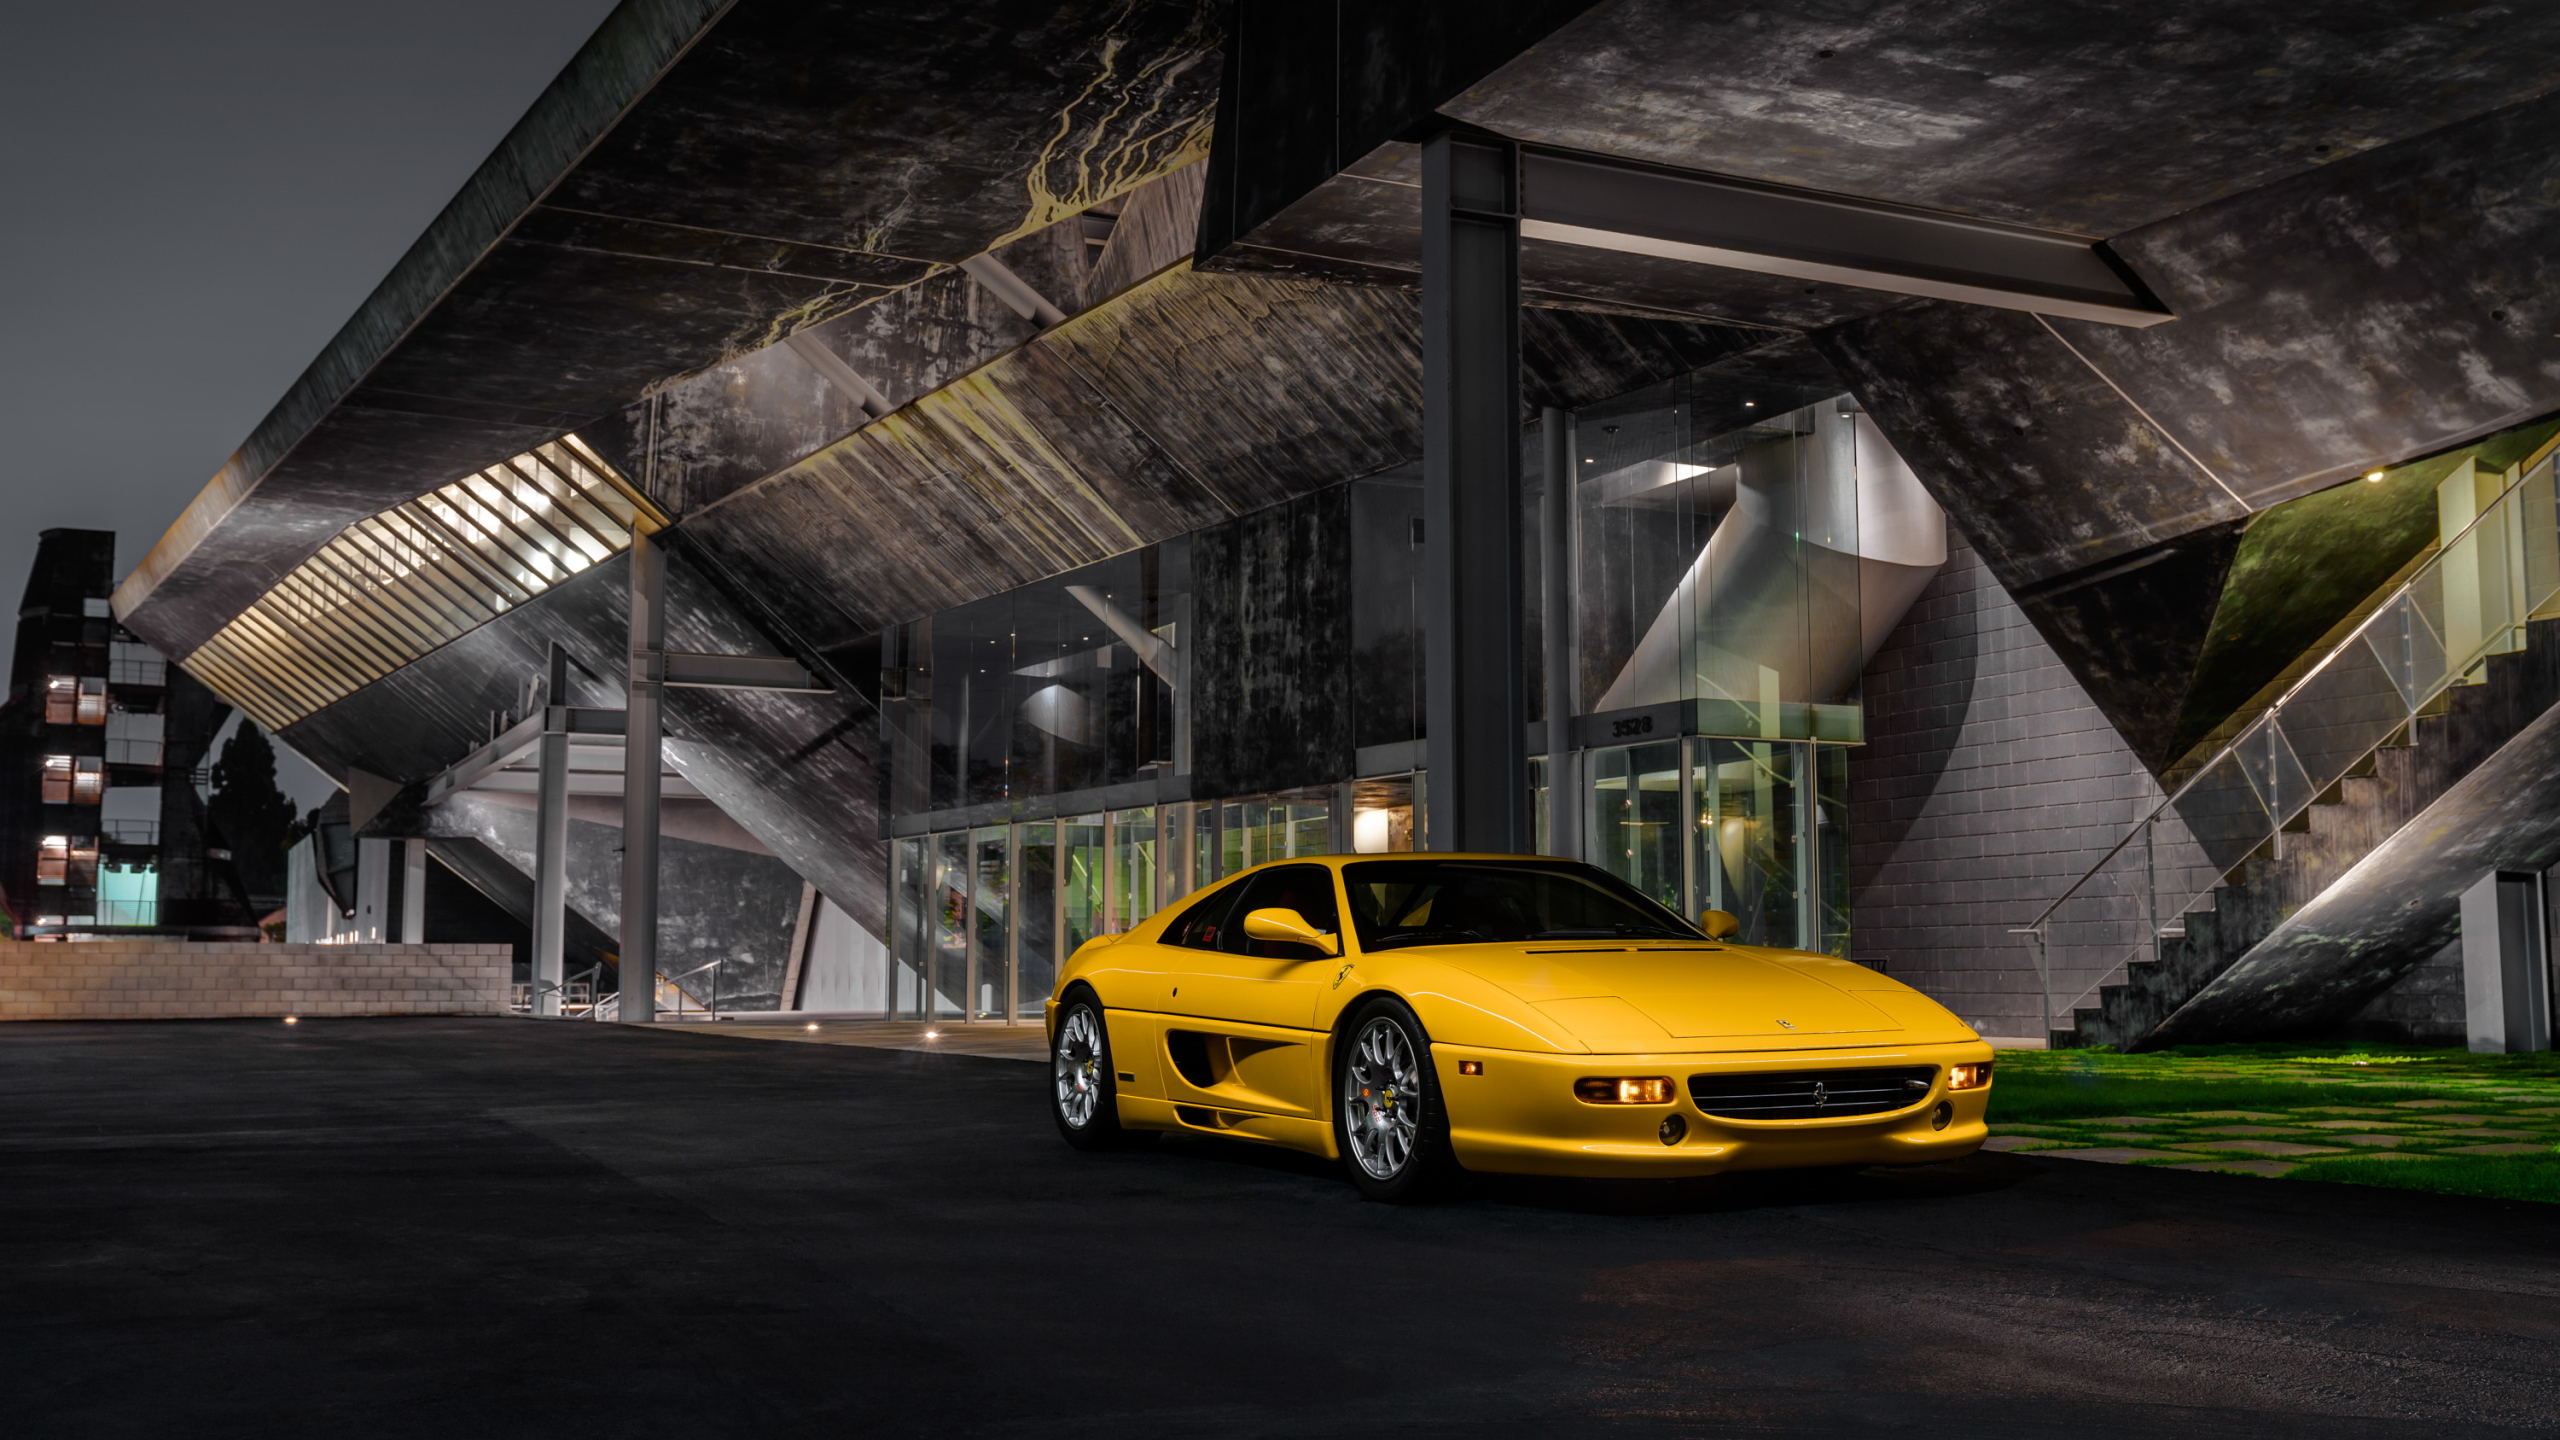 General 2560x1440 Ferrari F355 yellow cars italian cars night car Ferrari vehicle building Stellantis